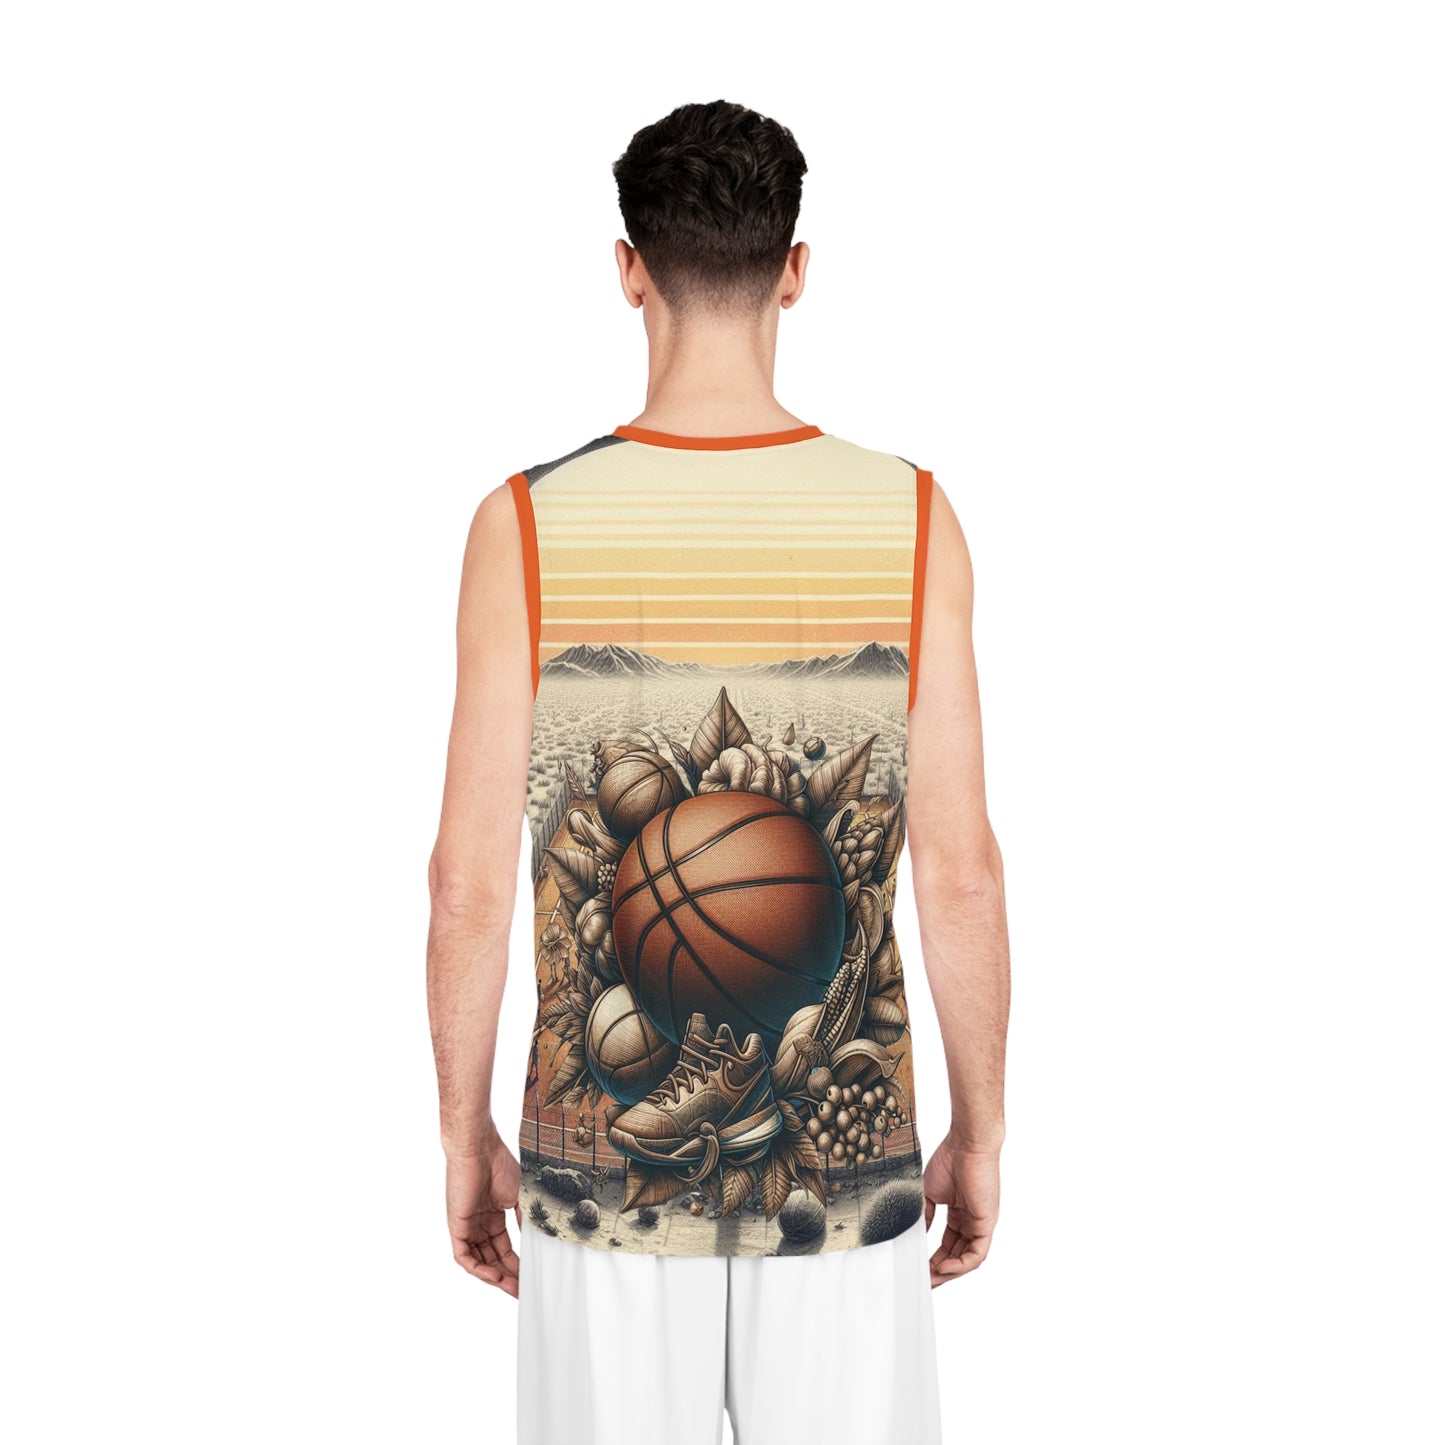 Basketball Jersey